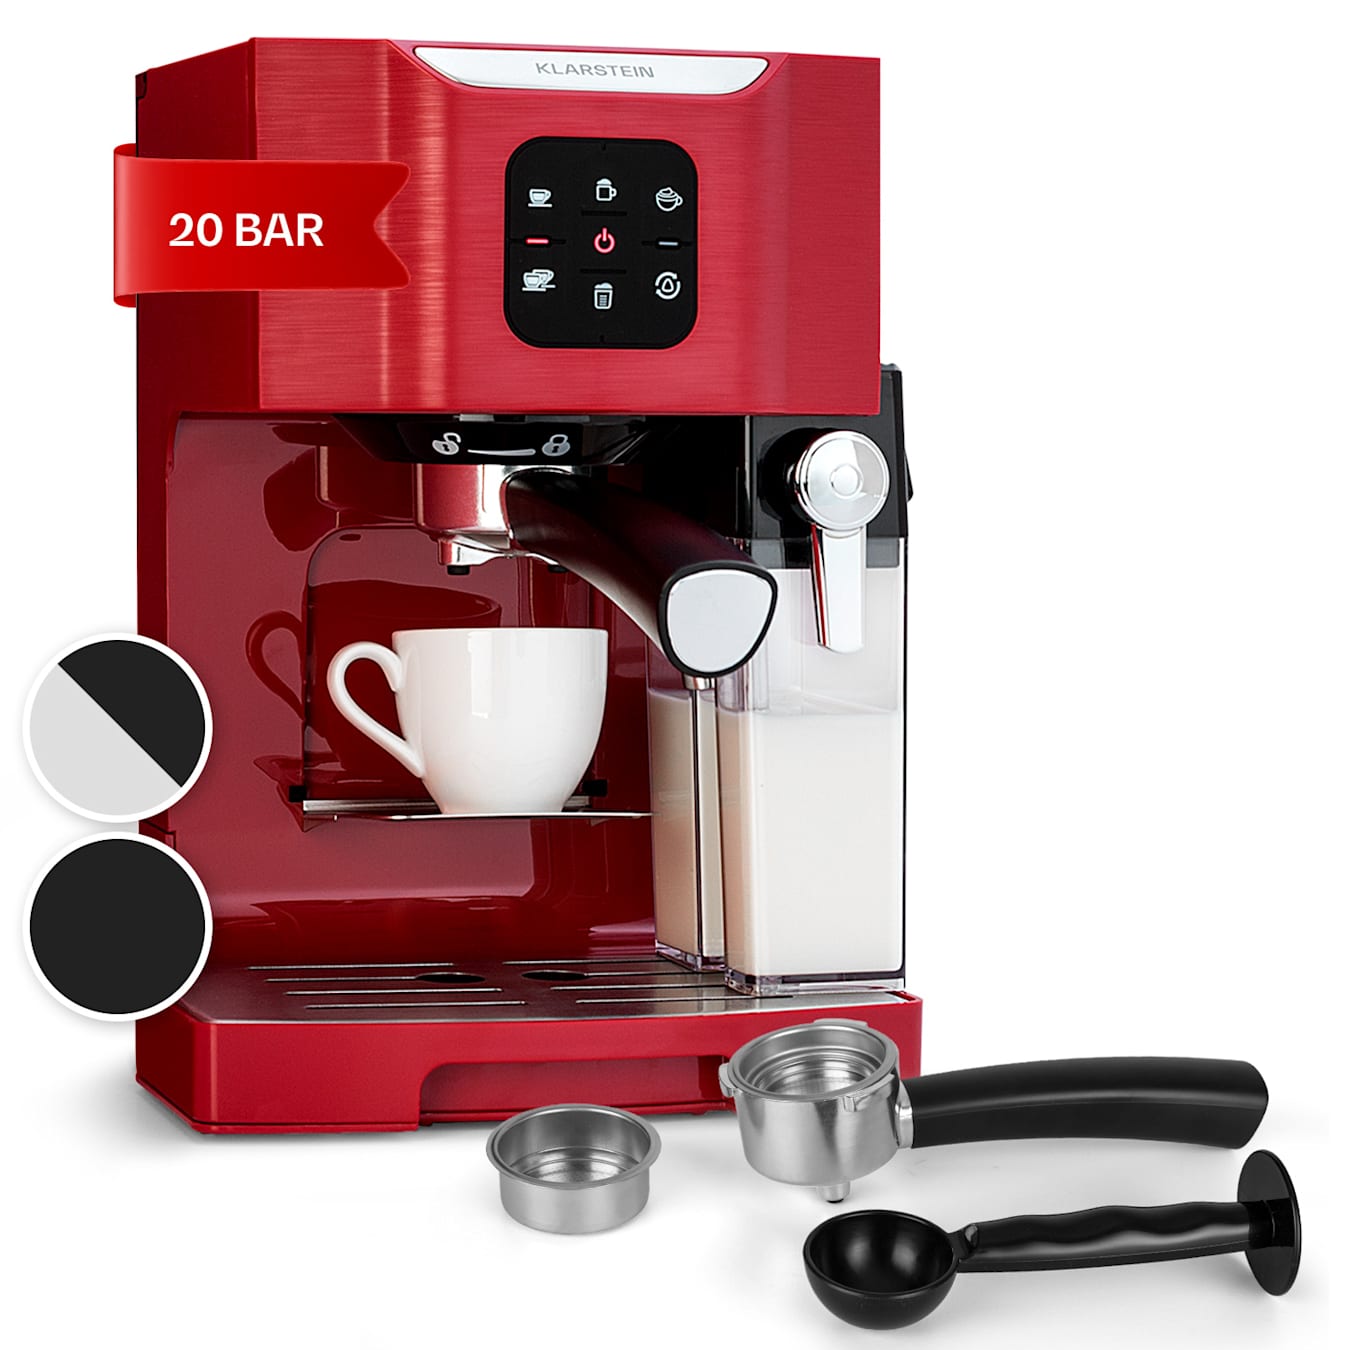 BellaVita koffiezetapparaat | 3-in-1 functie: espresso, cappuccino en latte macchiato melkopschuimer | 1450 watt vermogen | 20 pompdruk | one-touch control | filterhouder | 1,4 liter watertank | Rood